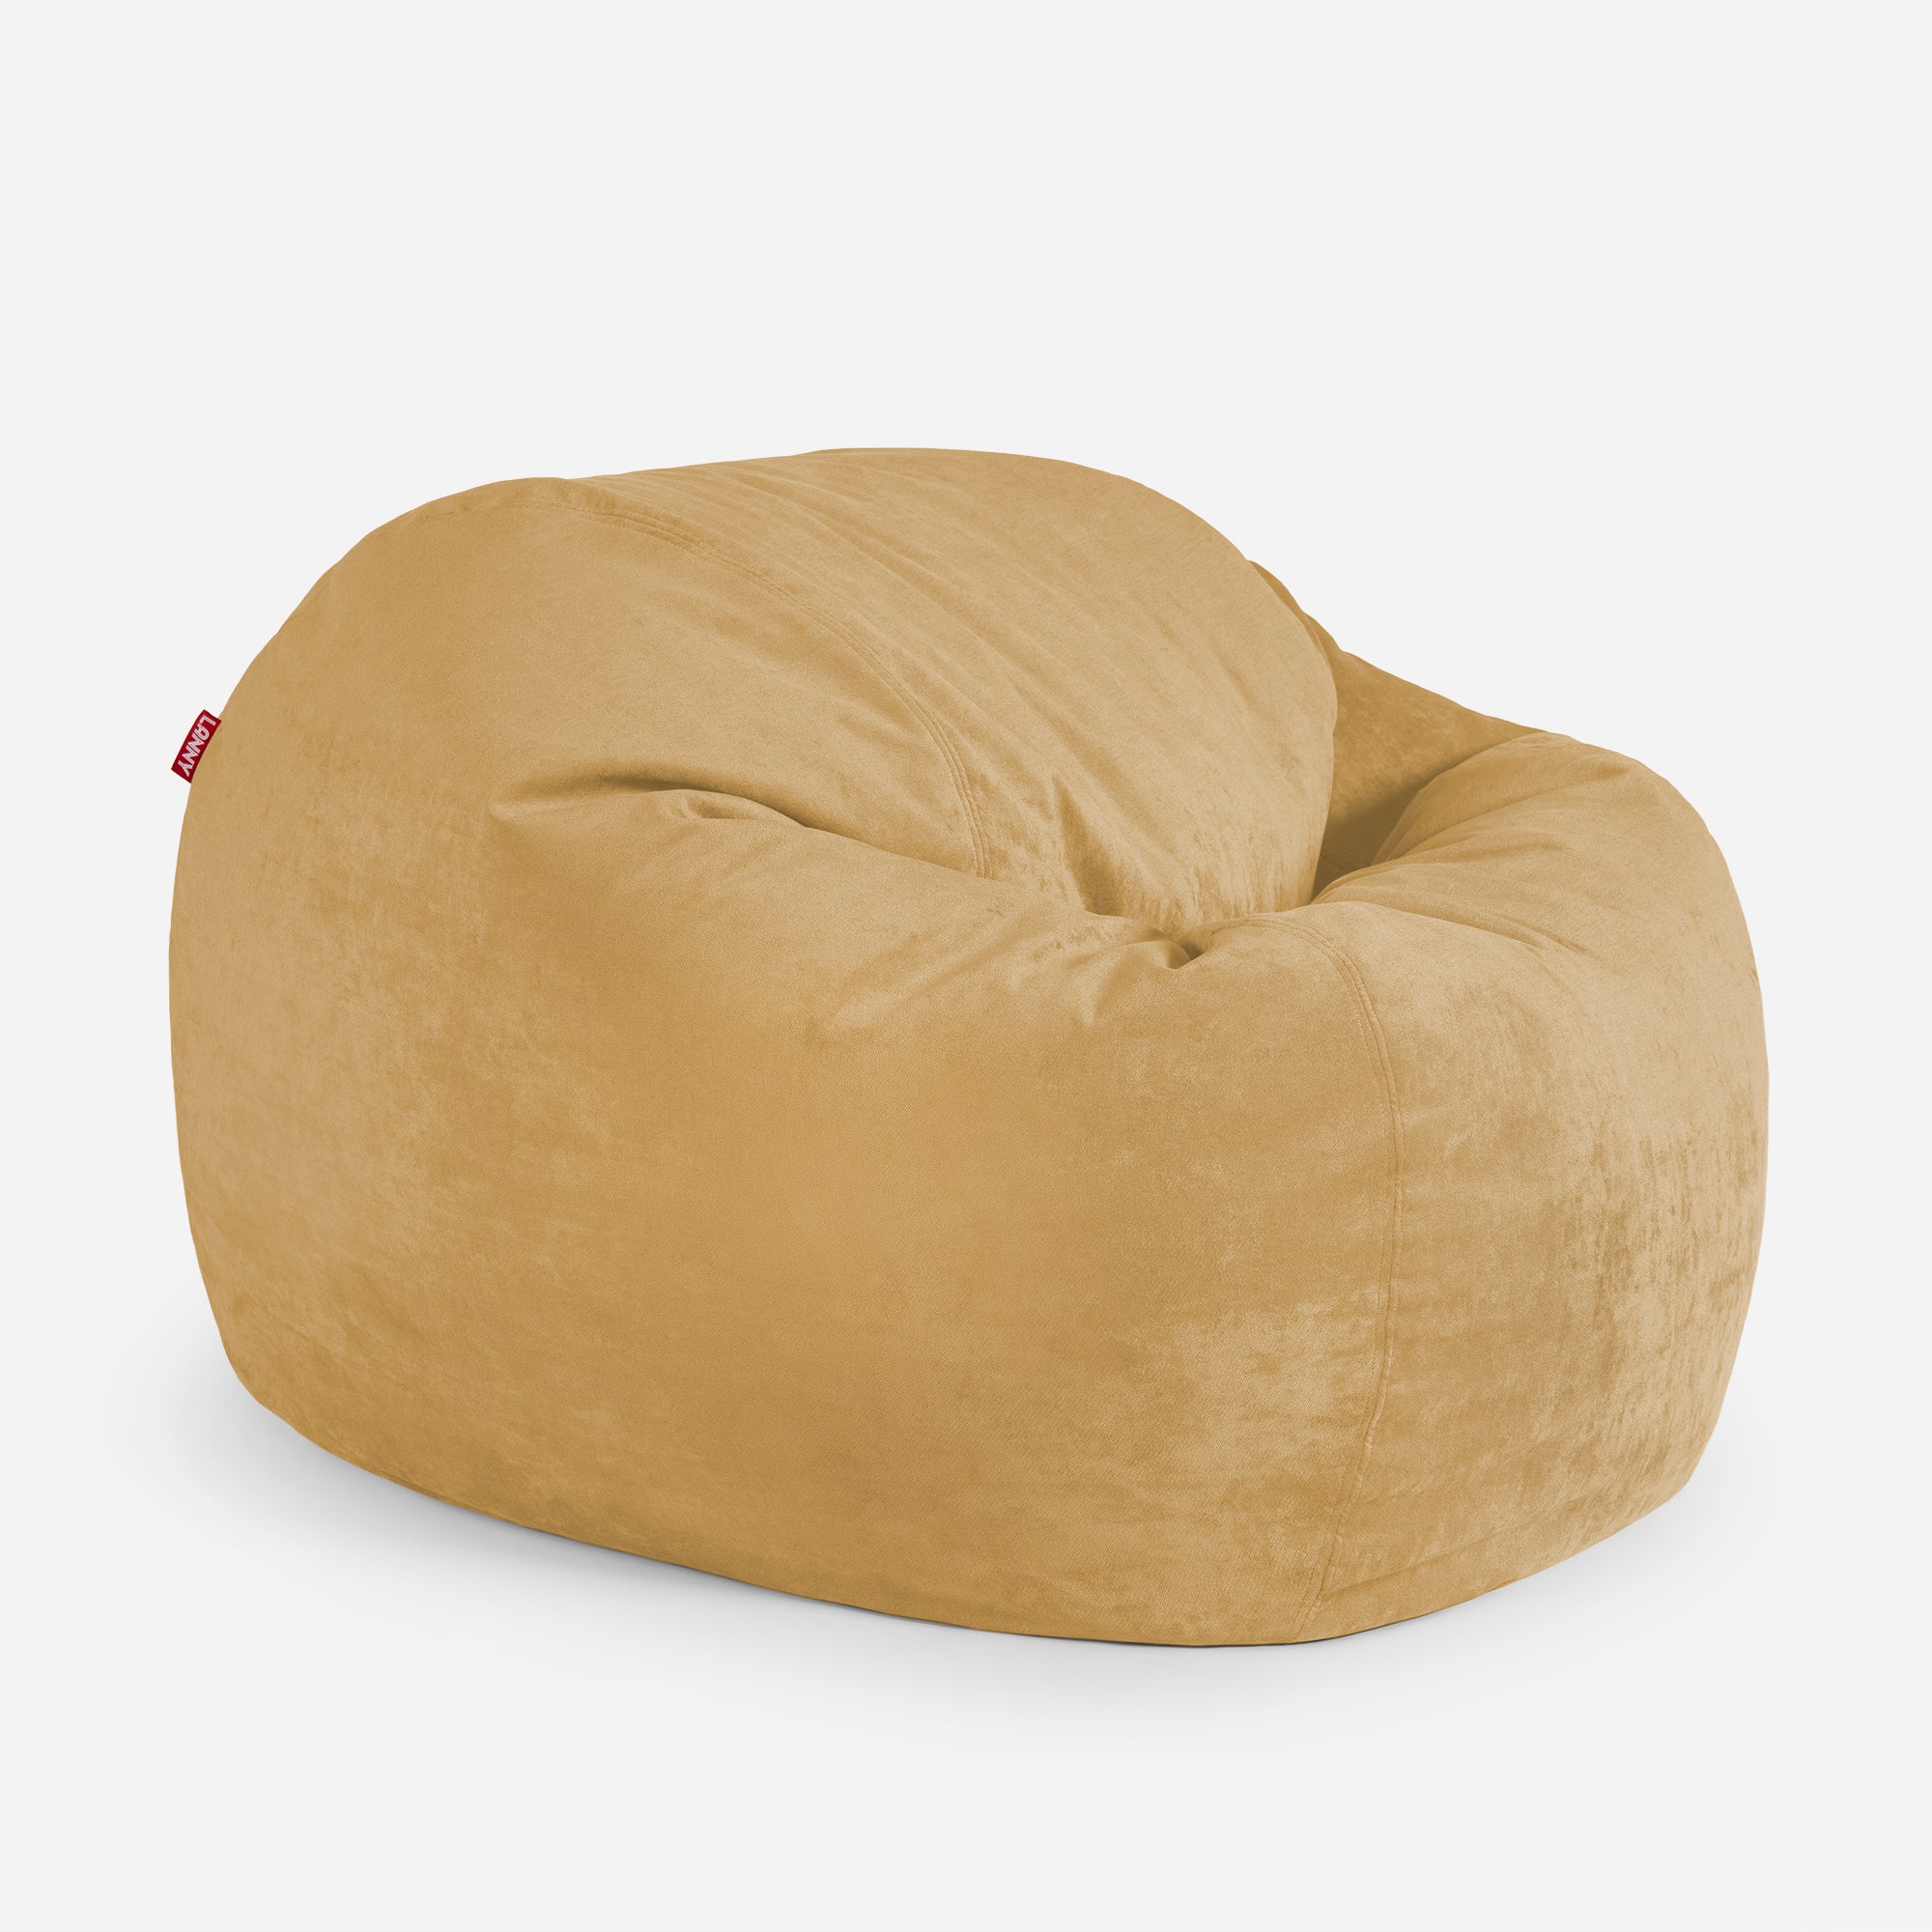 Sphere Aldo Mustard Bean bag